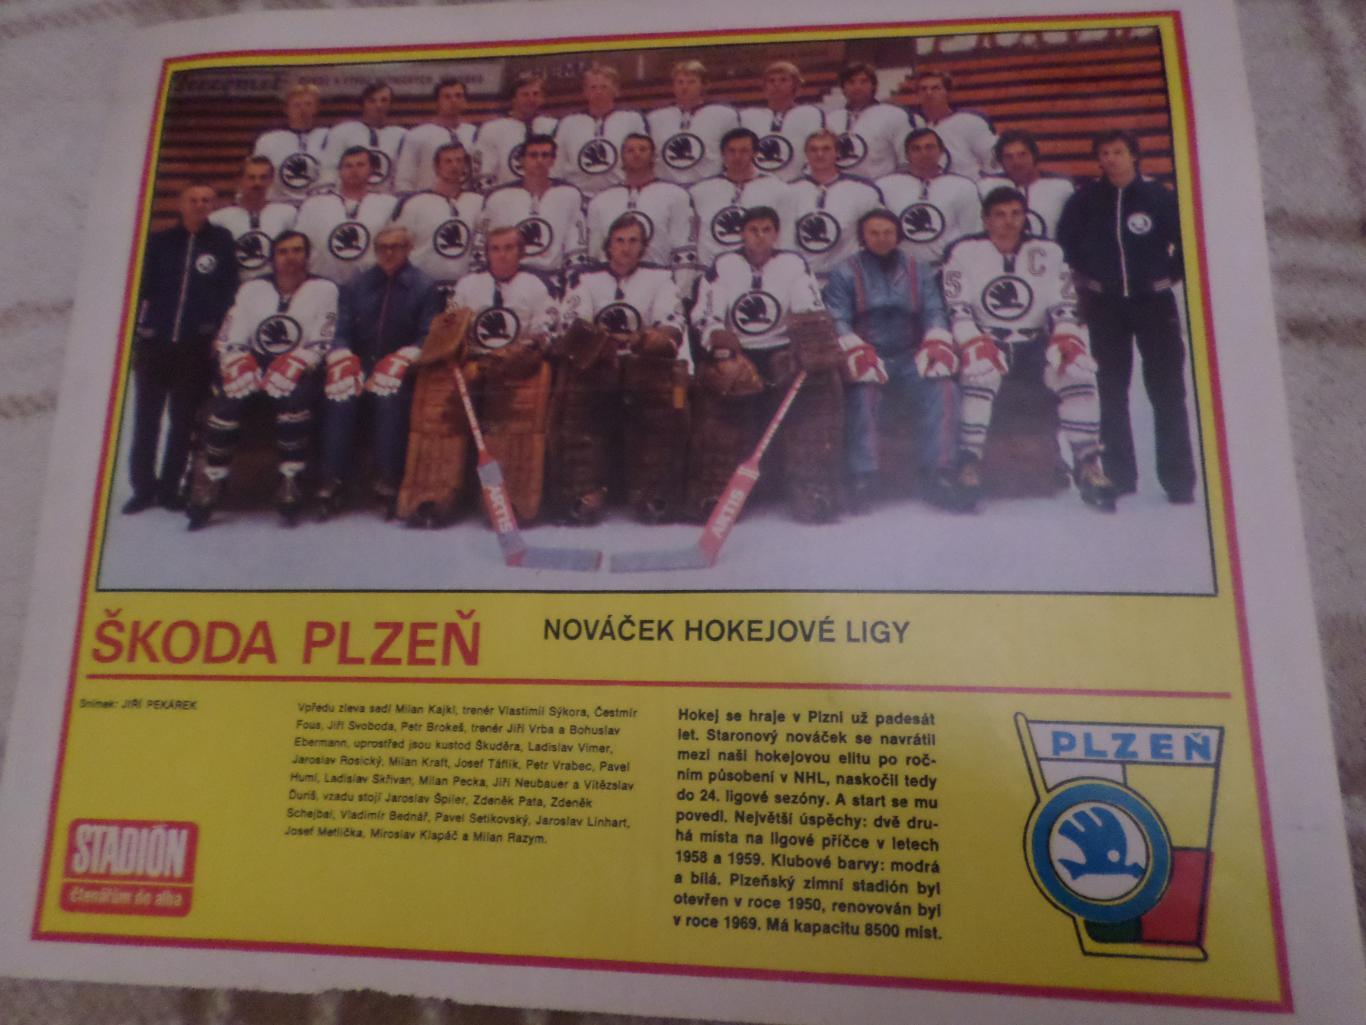 постер из журнала Стадион Чехословакия хоккей Шкода Пльзень